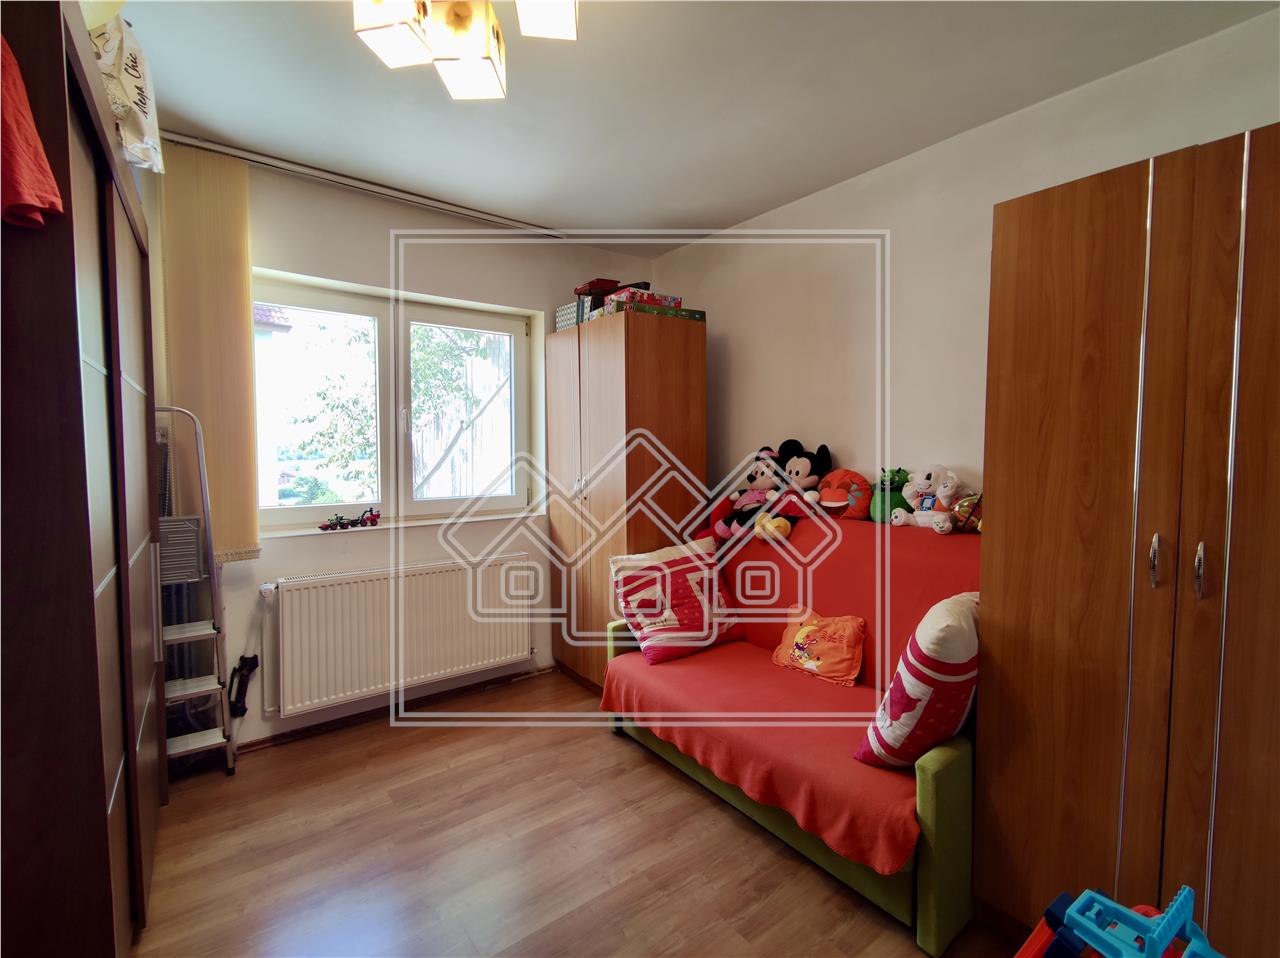 3-Zimmer-Wohnung zum Verkauf in Sibiu - Stadtteil Tilisca - 1. Stock